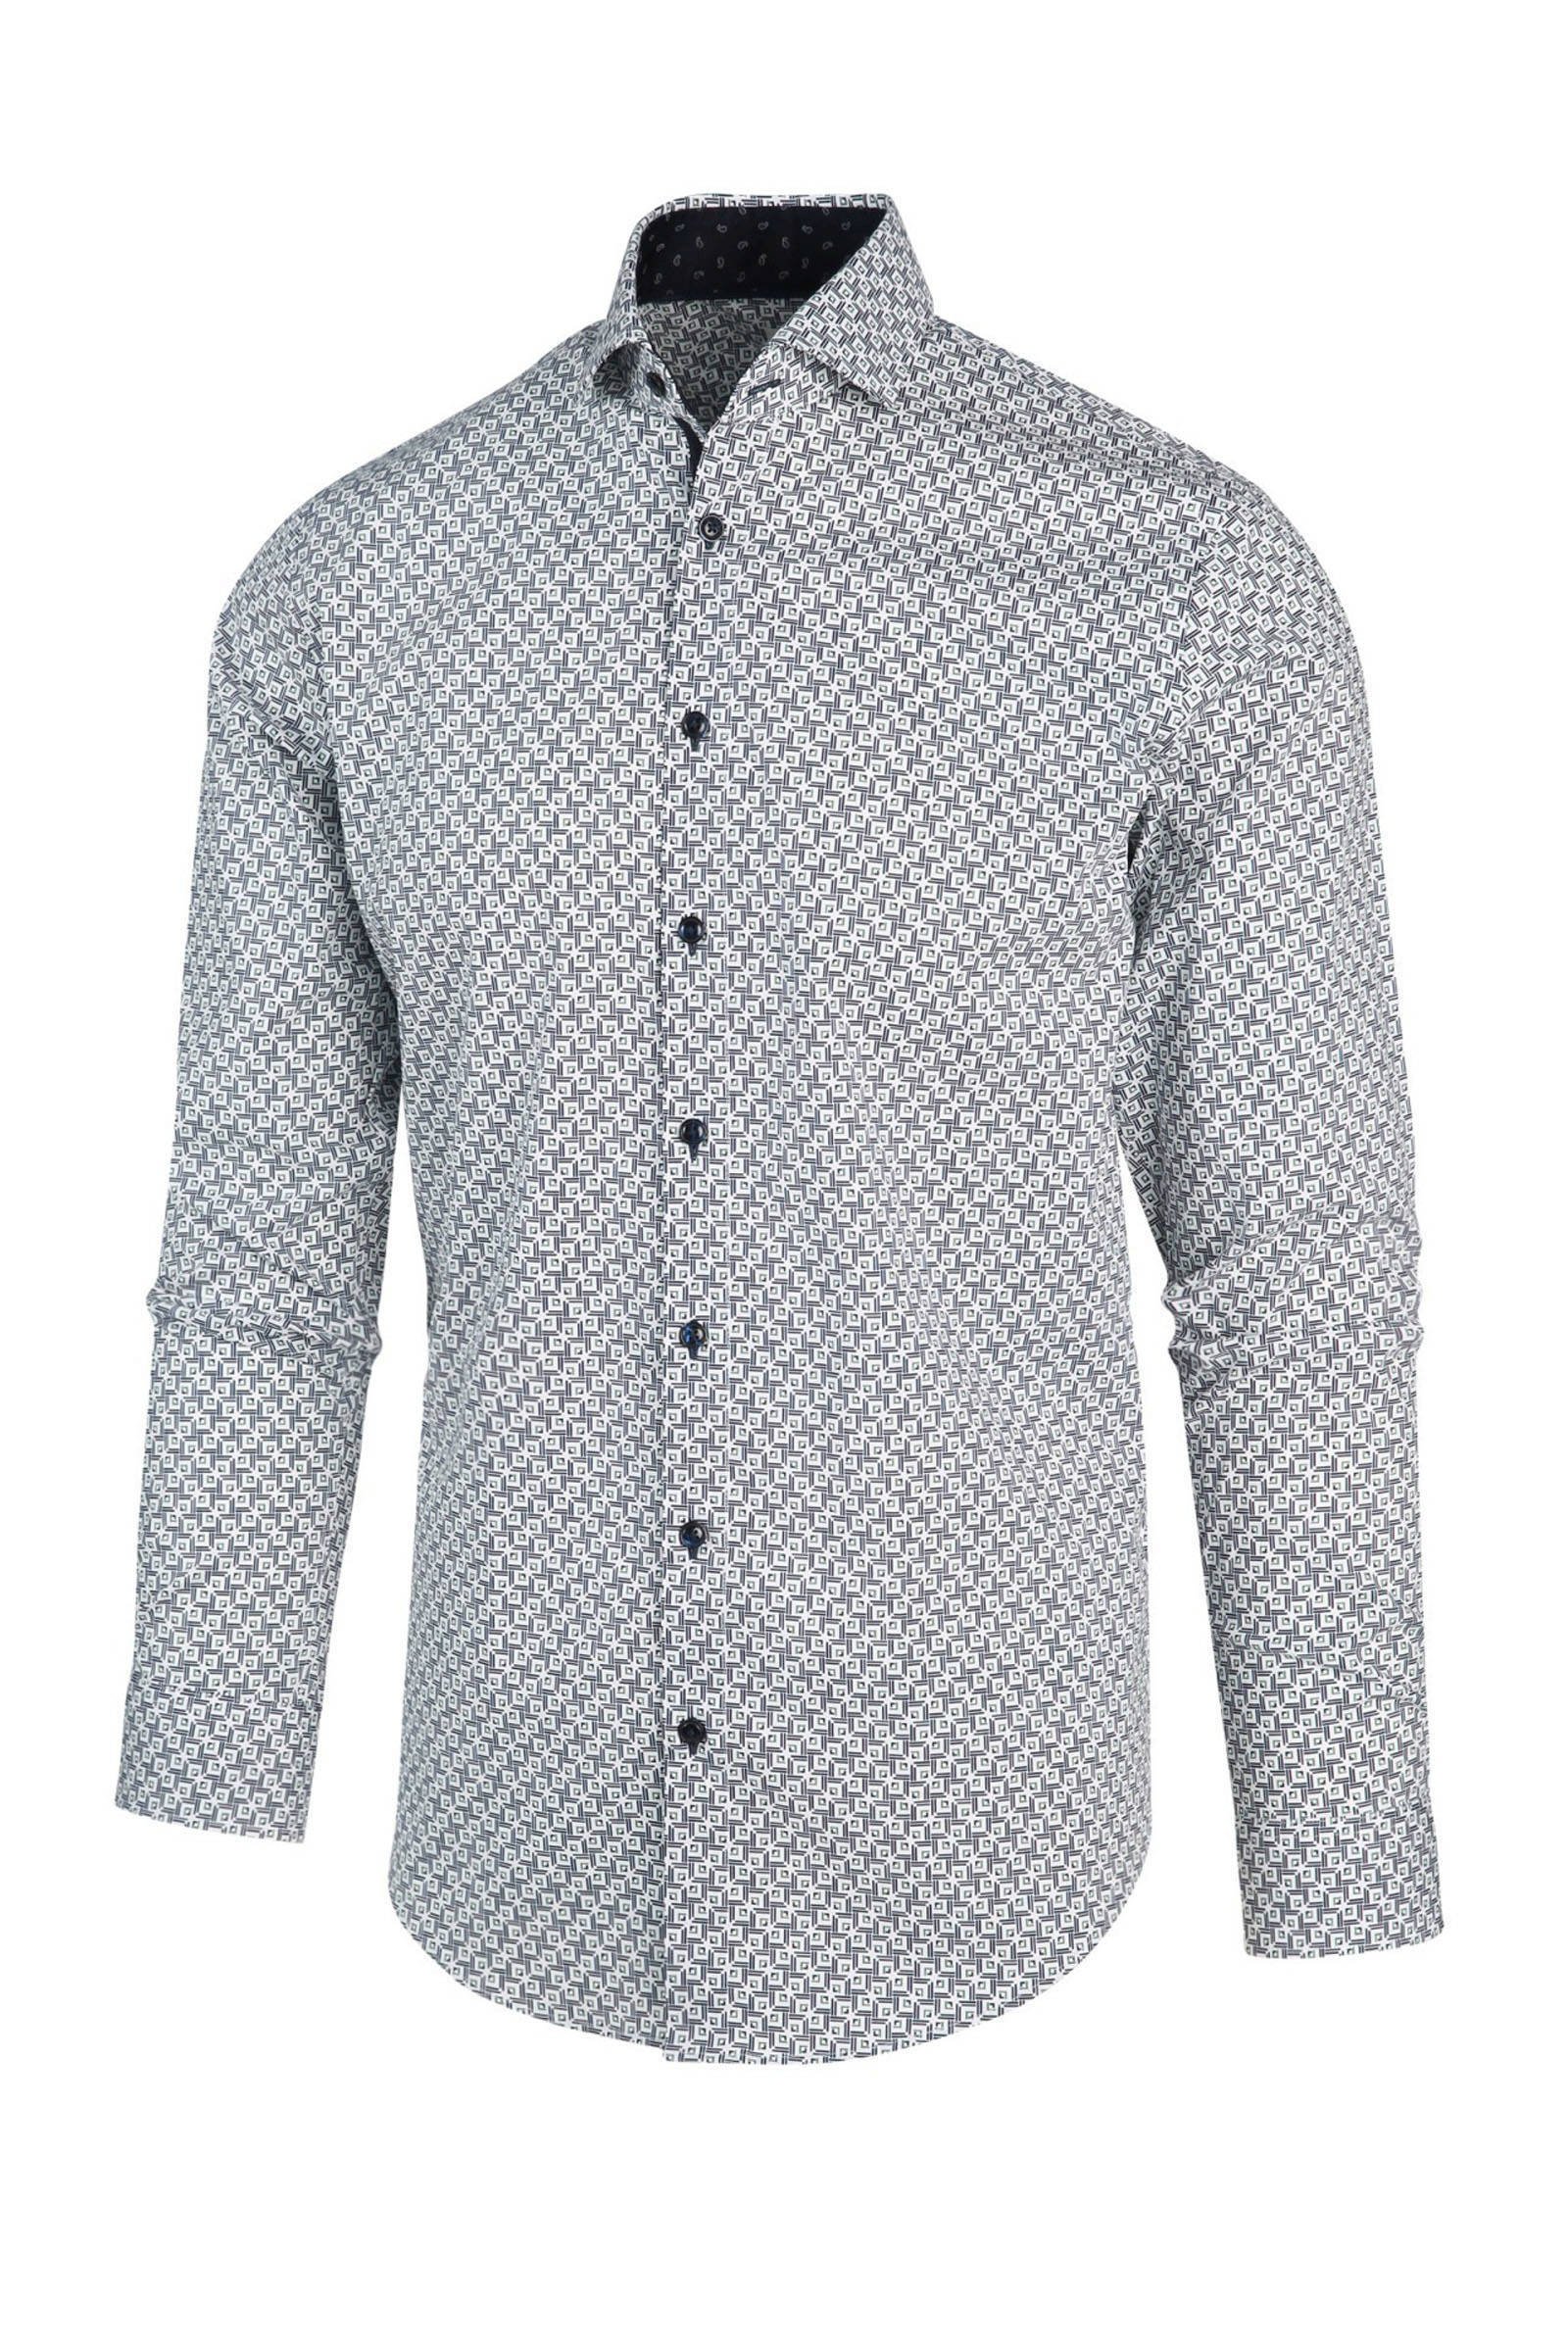 Blue Industry regular fit overhemd met all over print blauw/wit online kopen